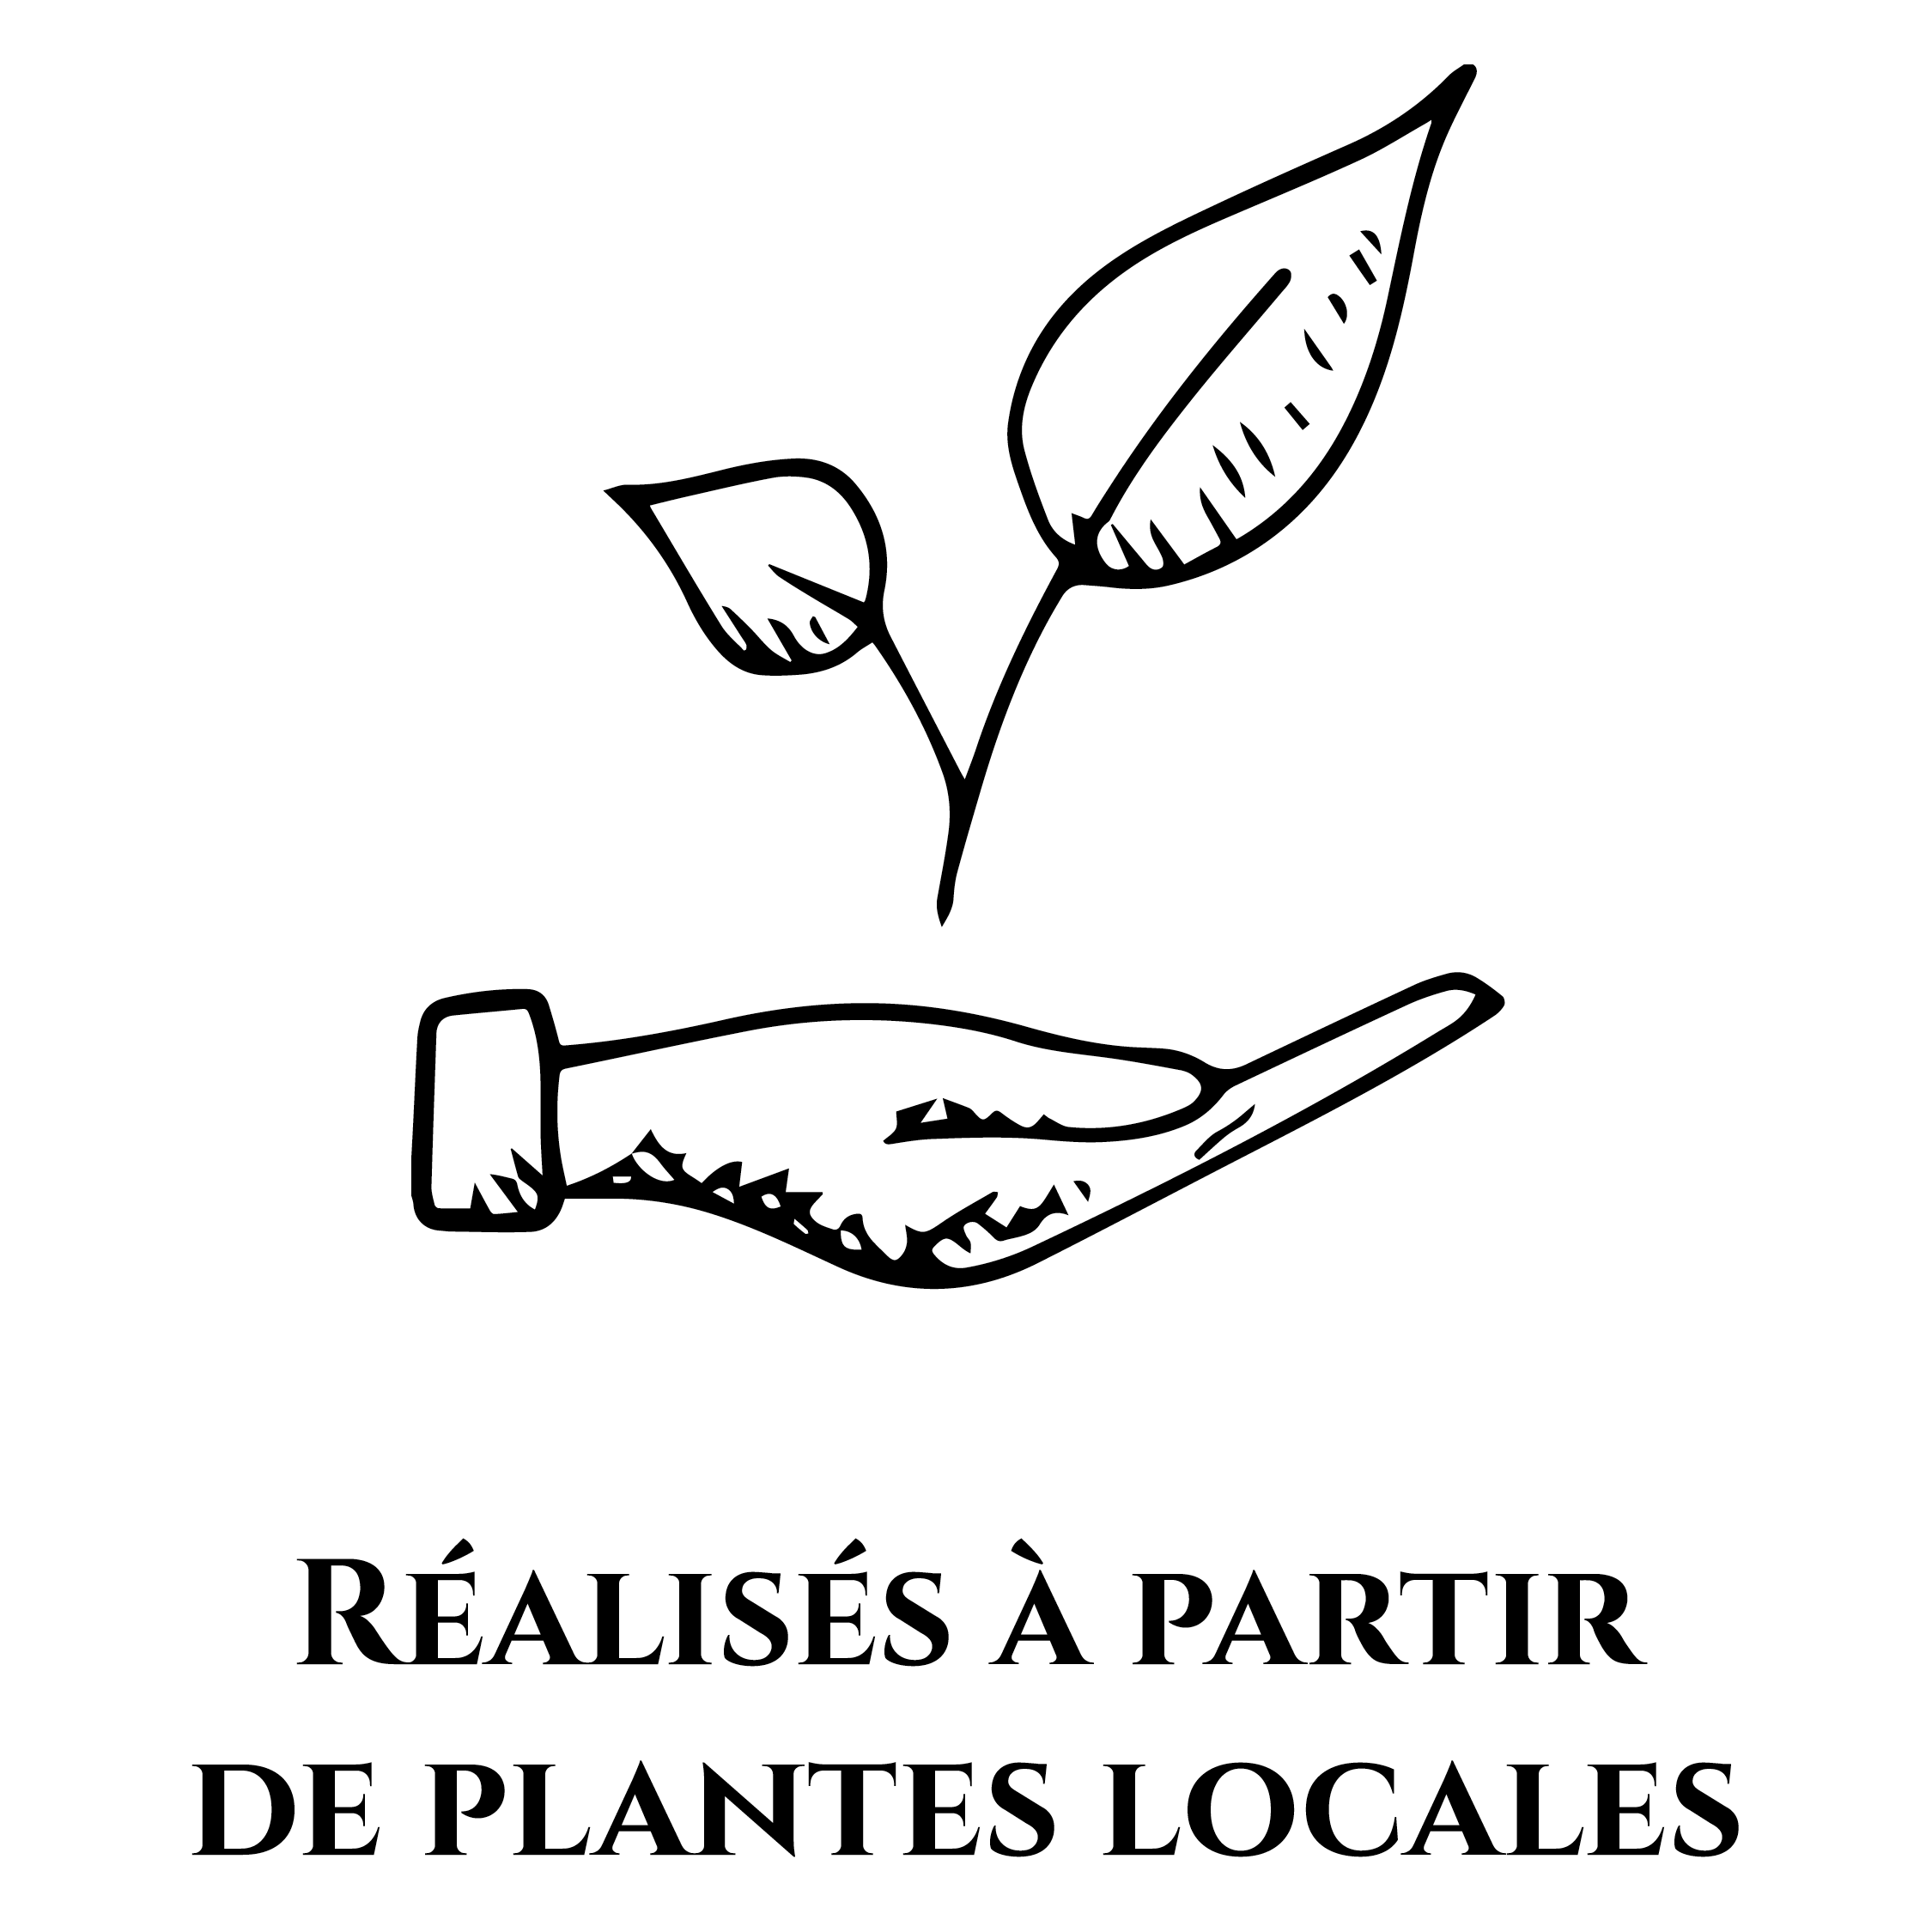 Icône représentant une main tenant une plante pour symboliser le fait que les produits OPHÉO sont réalisés à partir de plantes locales.